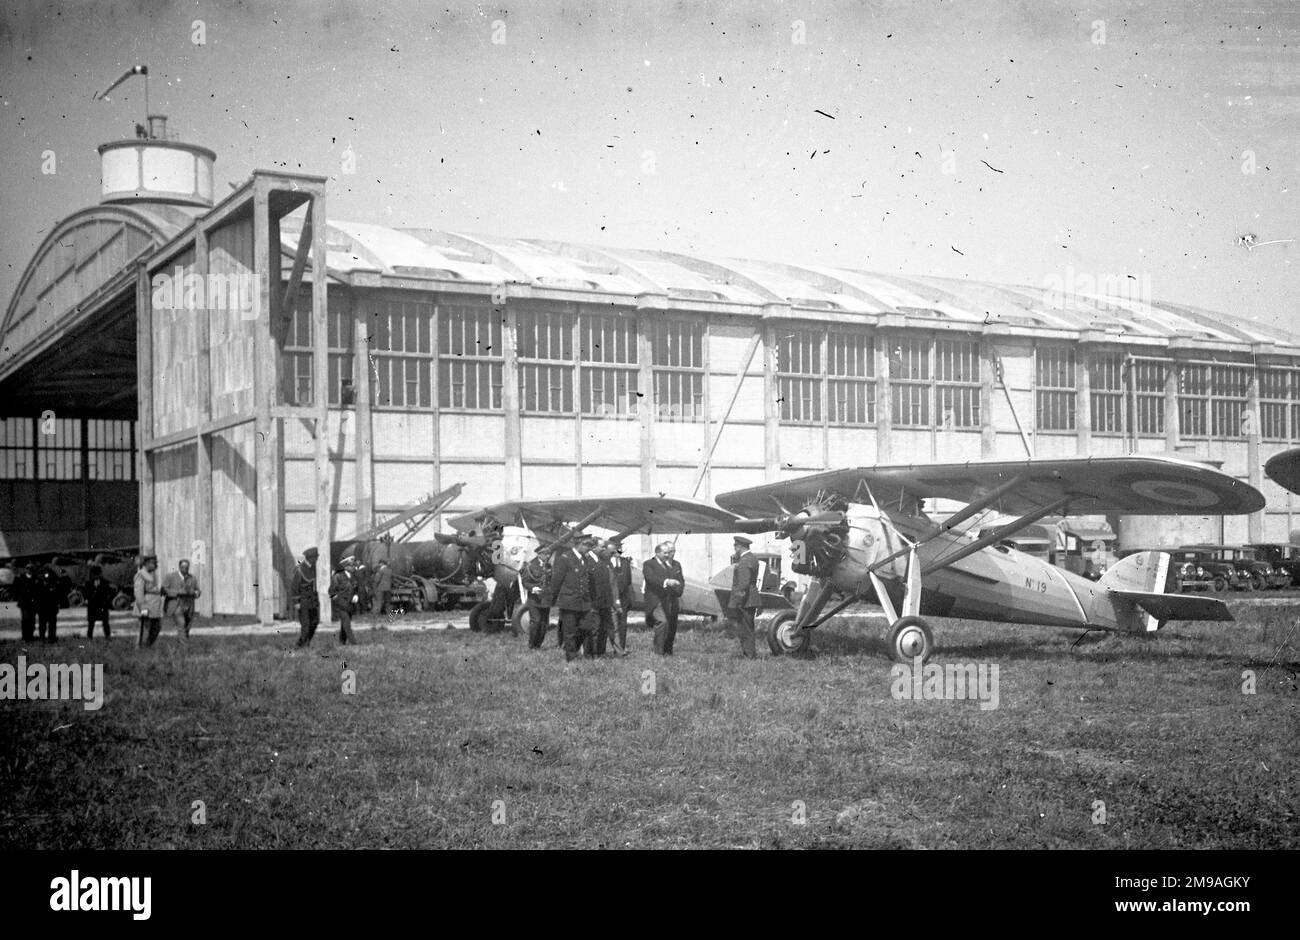 Morane-Saulnier MS.230 „19“-Ausbildungsflugzeug, das Anfang der 1930er Jahre von einem VVVip und seinem Gefolge inspiziert wird. (Das linke Bild der Stereoglasplatte negativ). (Der VVIP könnte Albert Lebrun, Präsident von Frankreich sein) Stockfoto